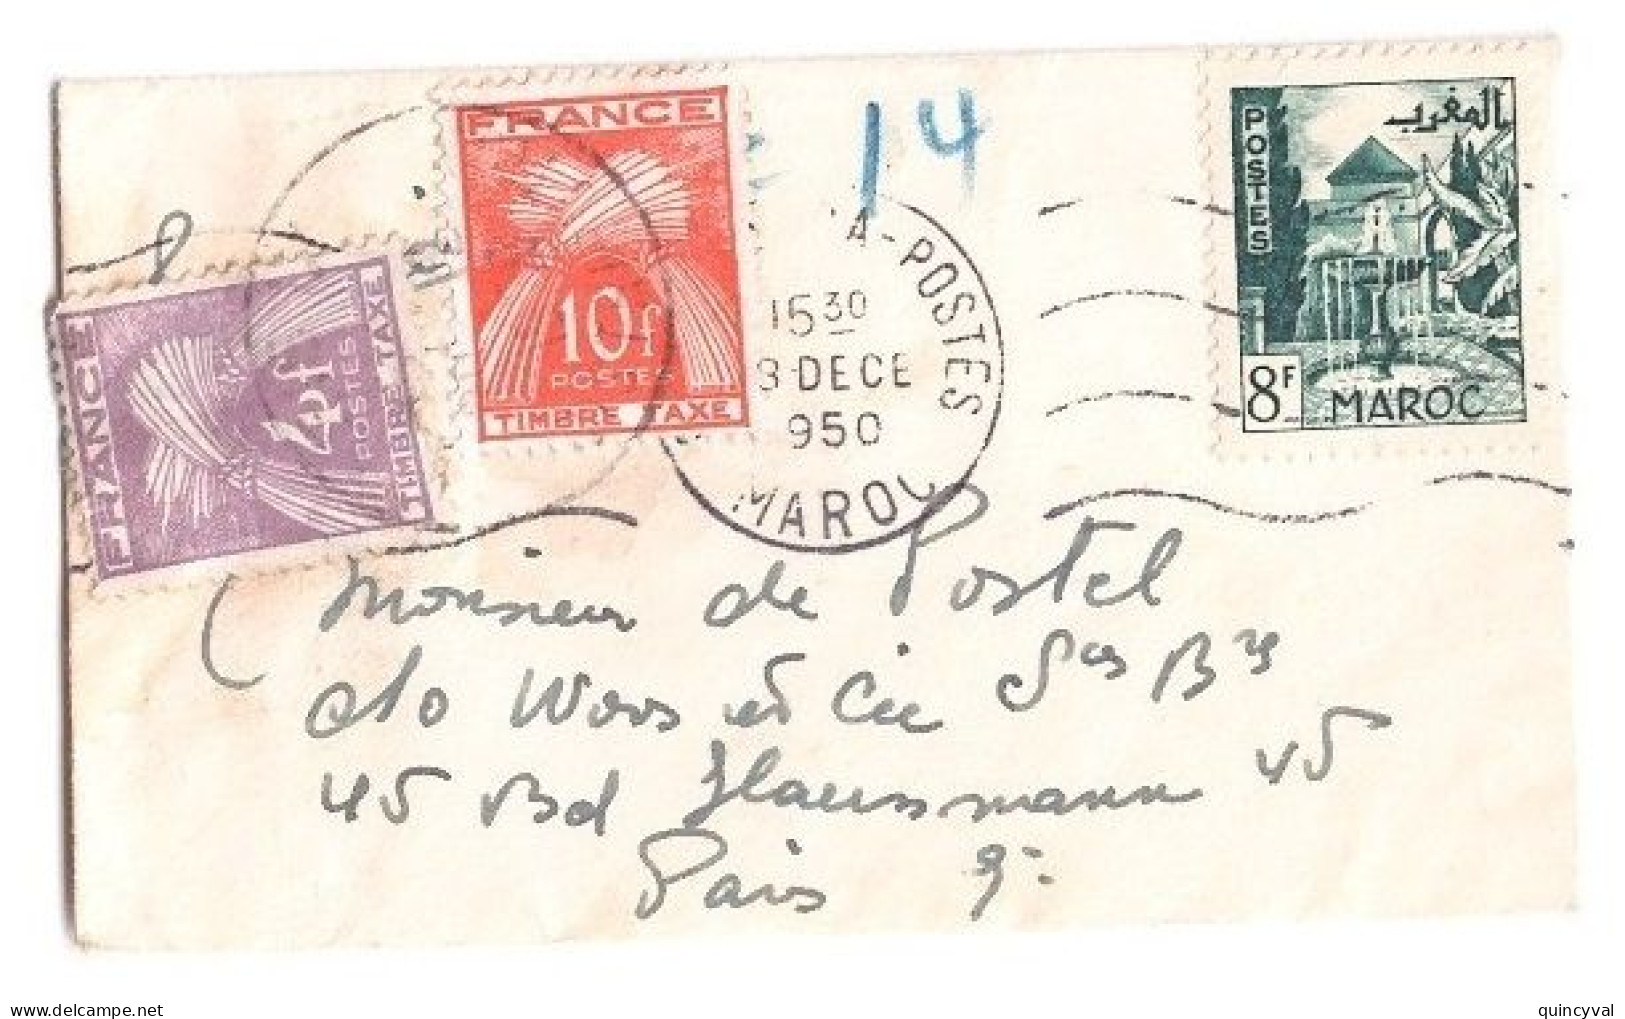 PARIS Carte De Visite Mignonnette Origine Maroc Affranchie 8 F Taxe 14 F Gerbes Yv T 86 84 Ob 1950 - 1859-1959 Briefe & Dokumente